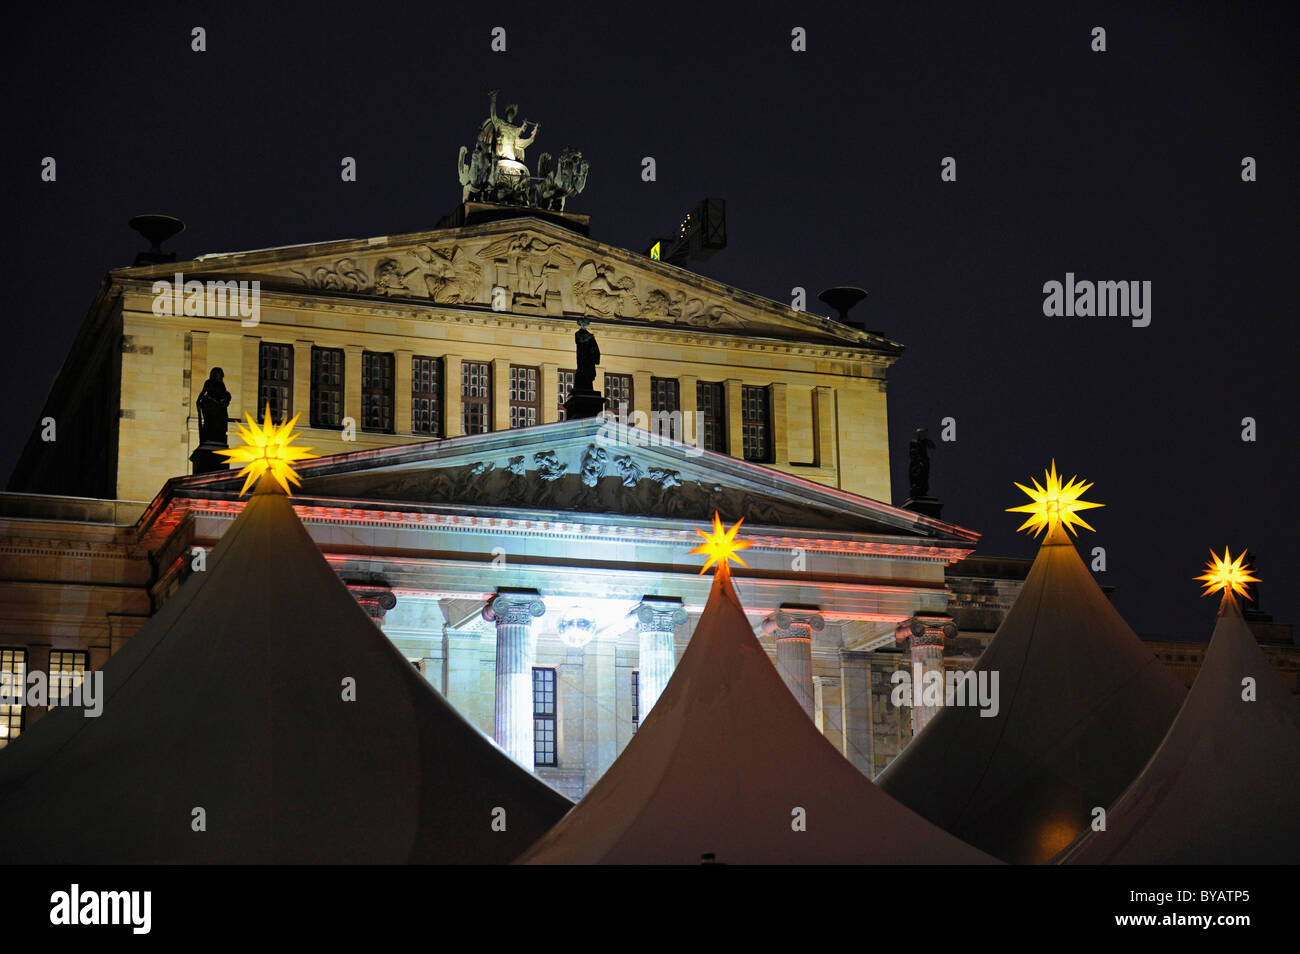 Weihnachtsmarkt am Gendarmenmarkt, hinter dem Konzerthaus concert Hall, Berlin, Deutschland, Europa Stockfoto